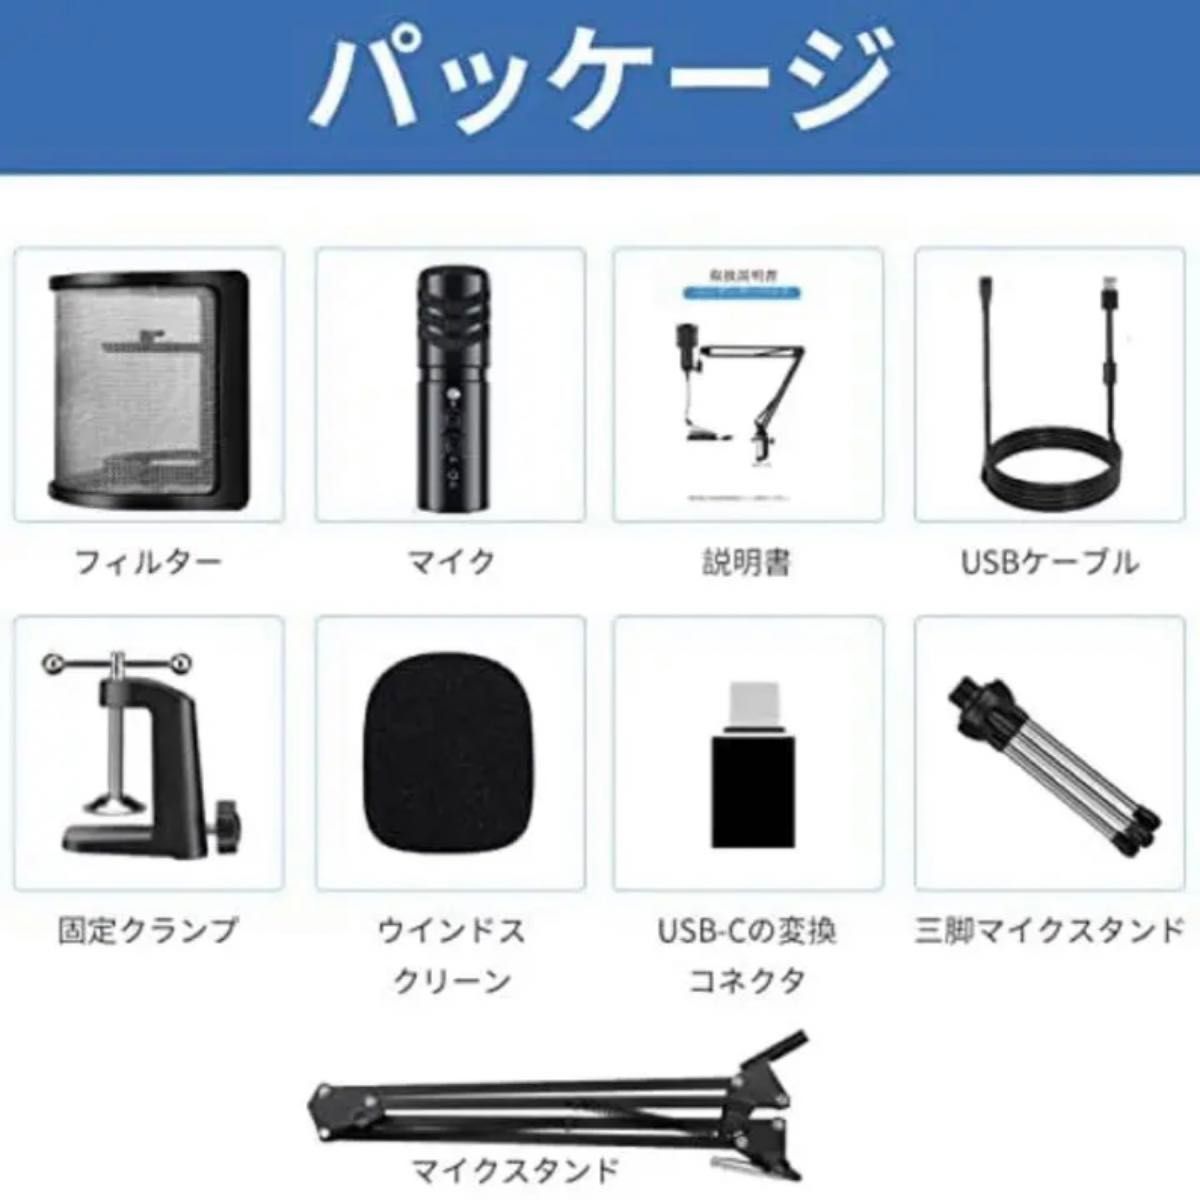 【新品未使用】 コンデンサーマイク USBマイク YouTube 録音 ZOOM